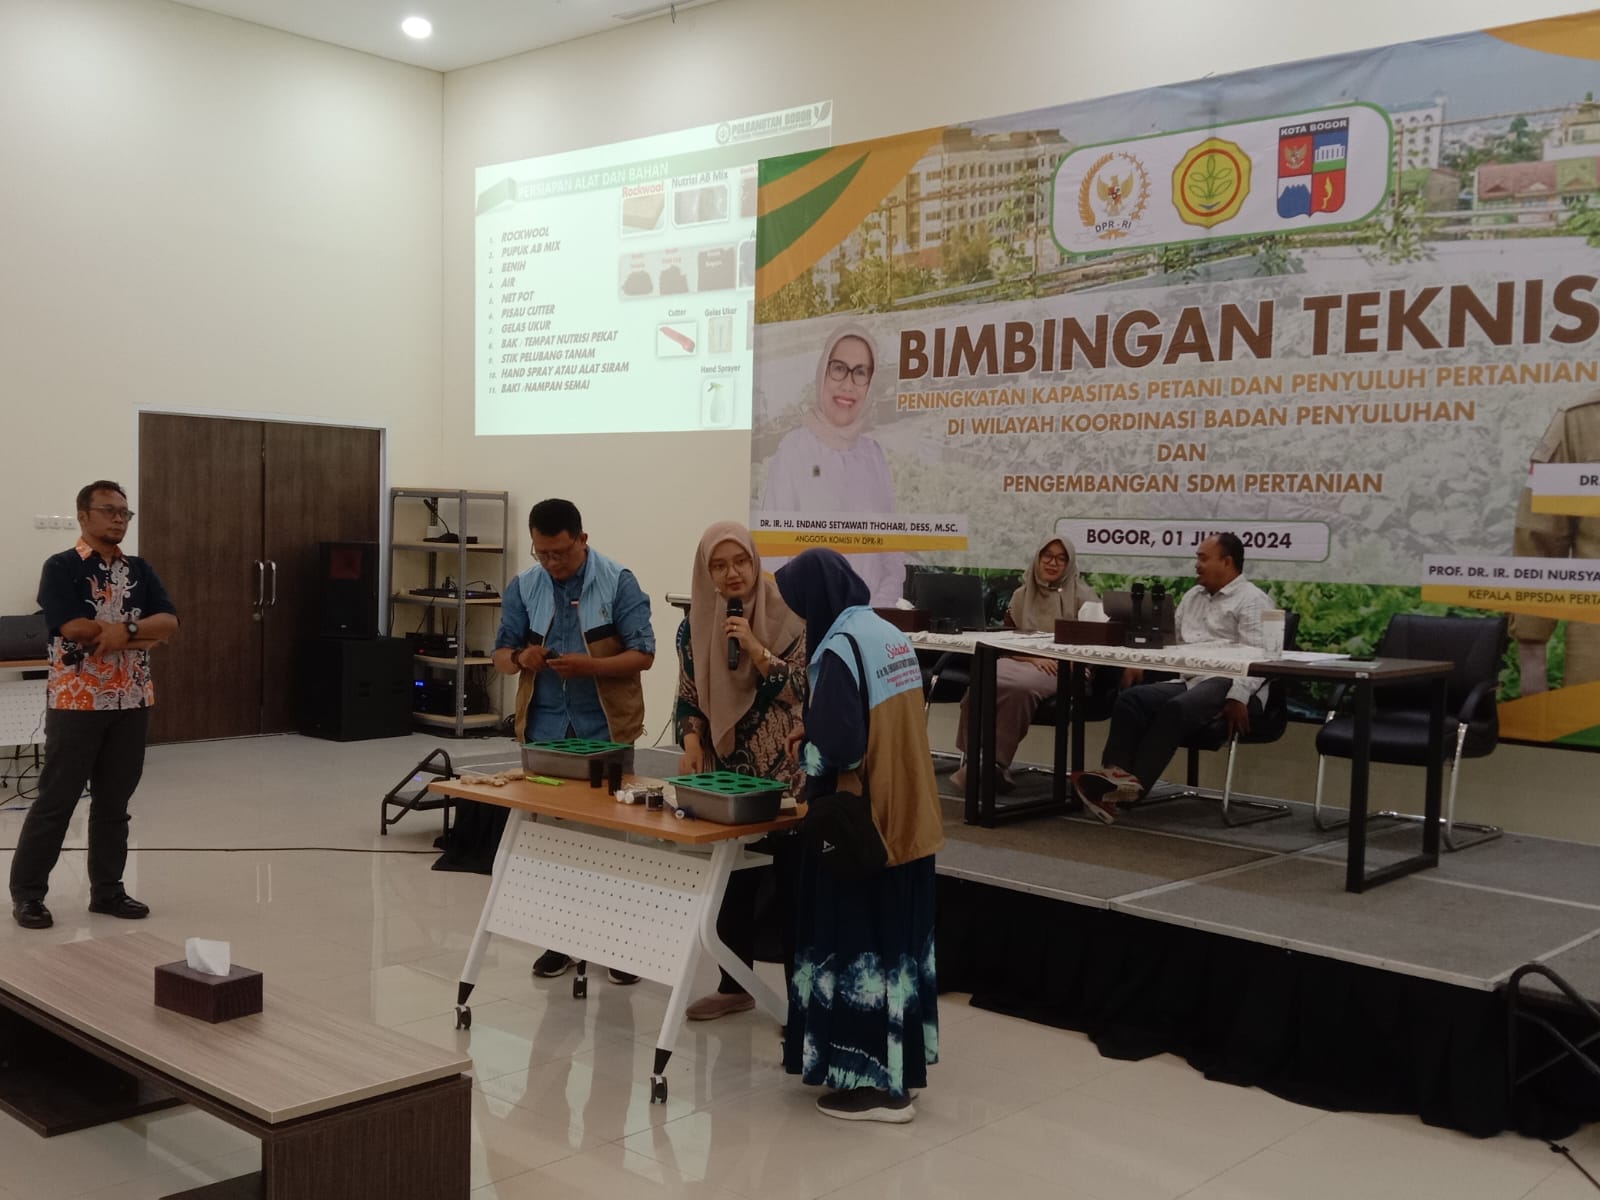 Politeknik Pembangunan Pertanian (Polbangtan) Bogor dengan dukungan Komisi IV DPR RI Wilayah Kota Bogor melaksanakan kegiatan Bimbingan Teknis (Bimtek) untuk meningkatkan kapasitas petani